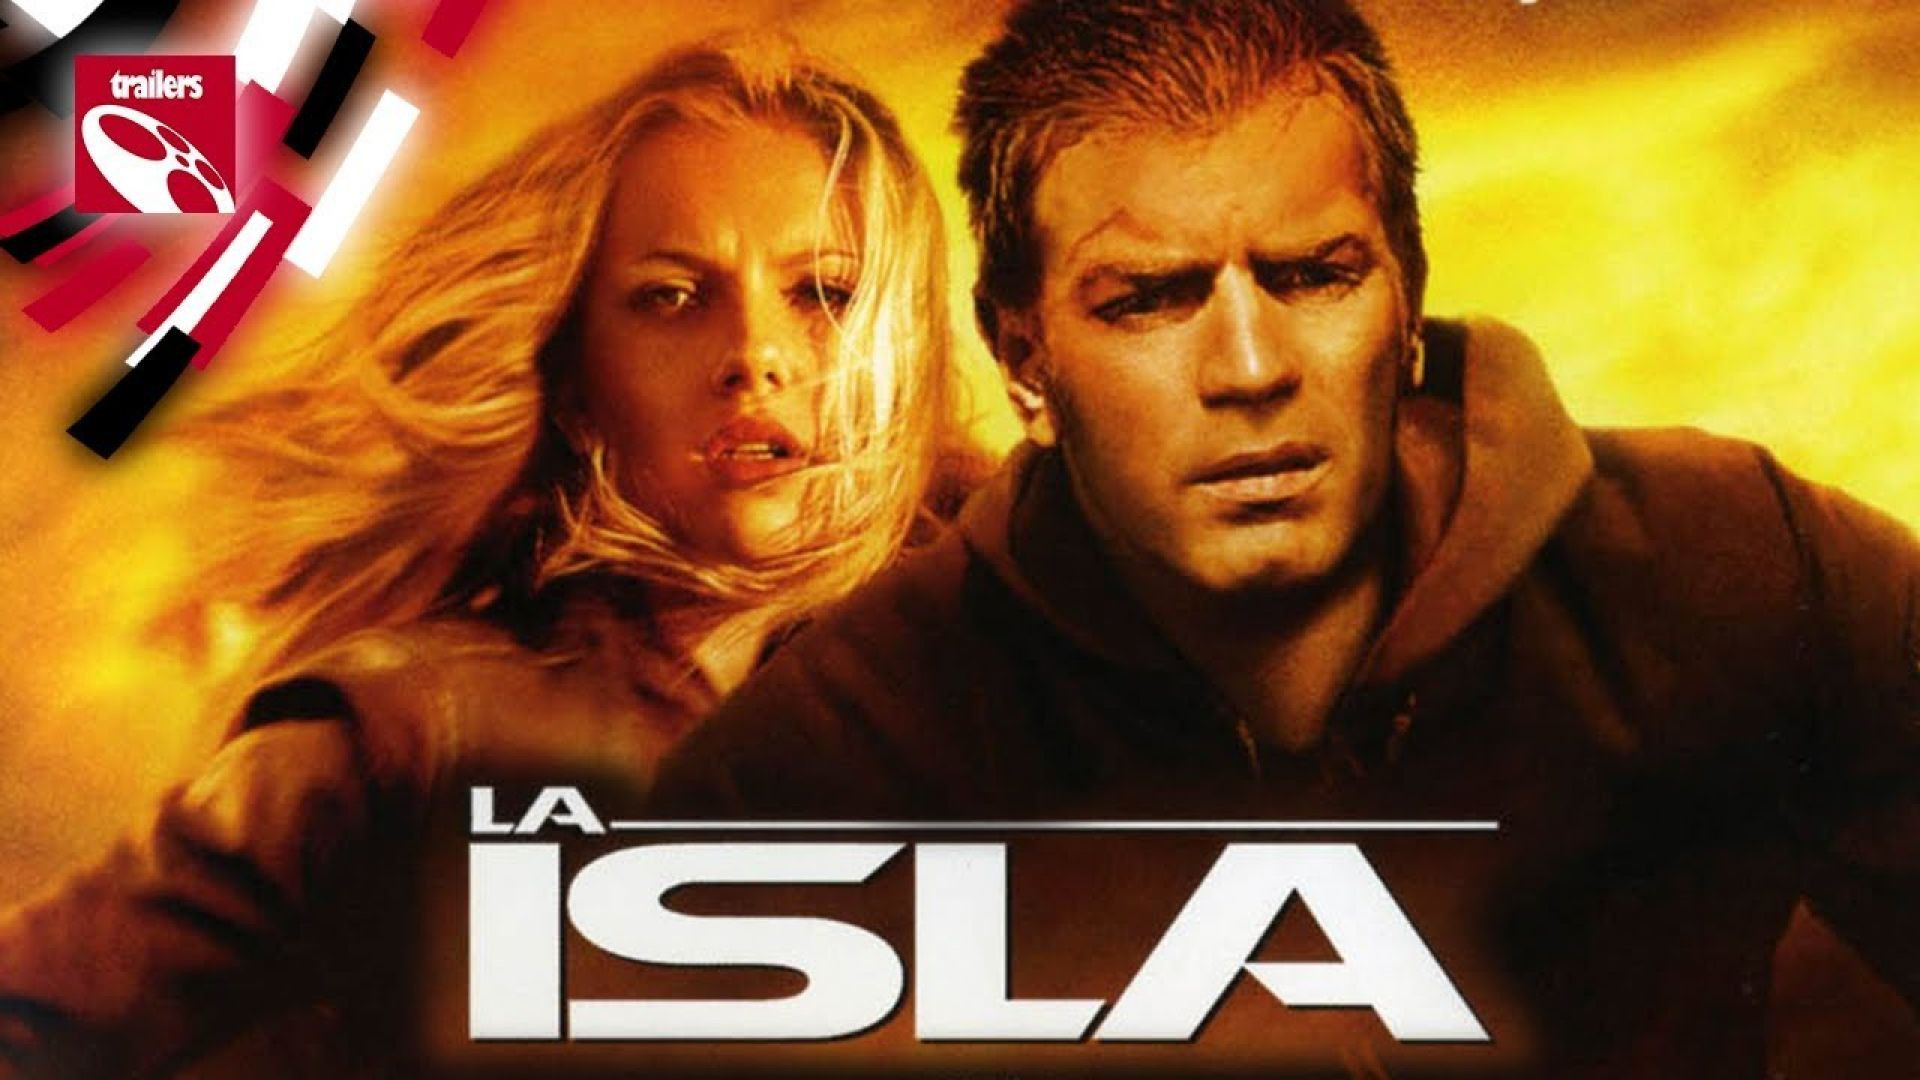 La Isla (2005) cas.